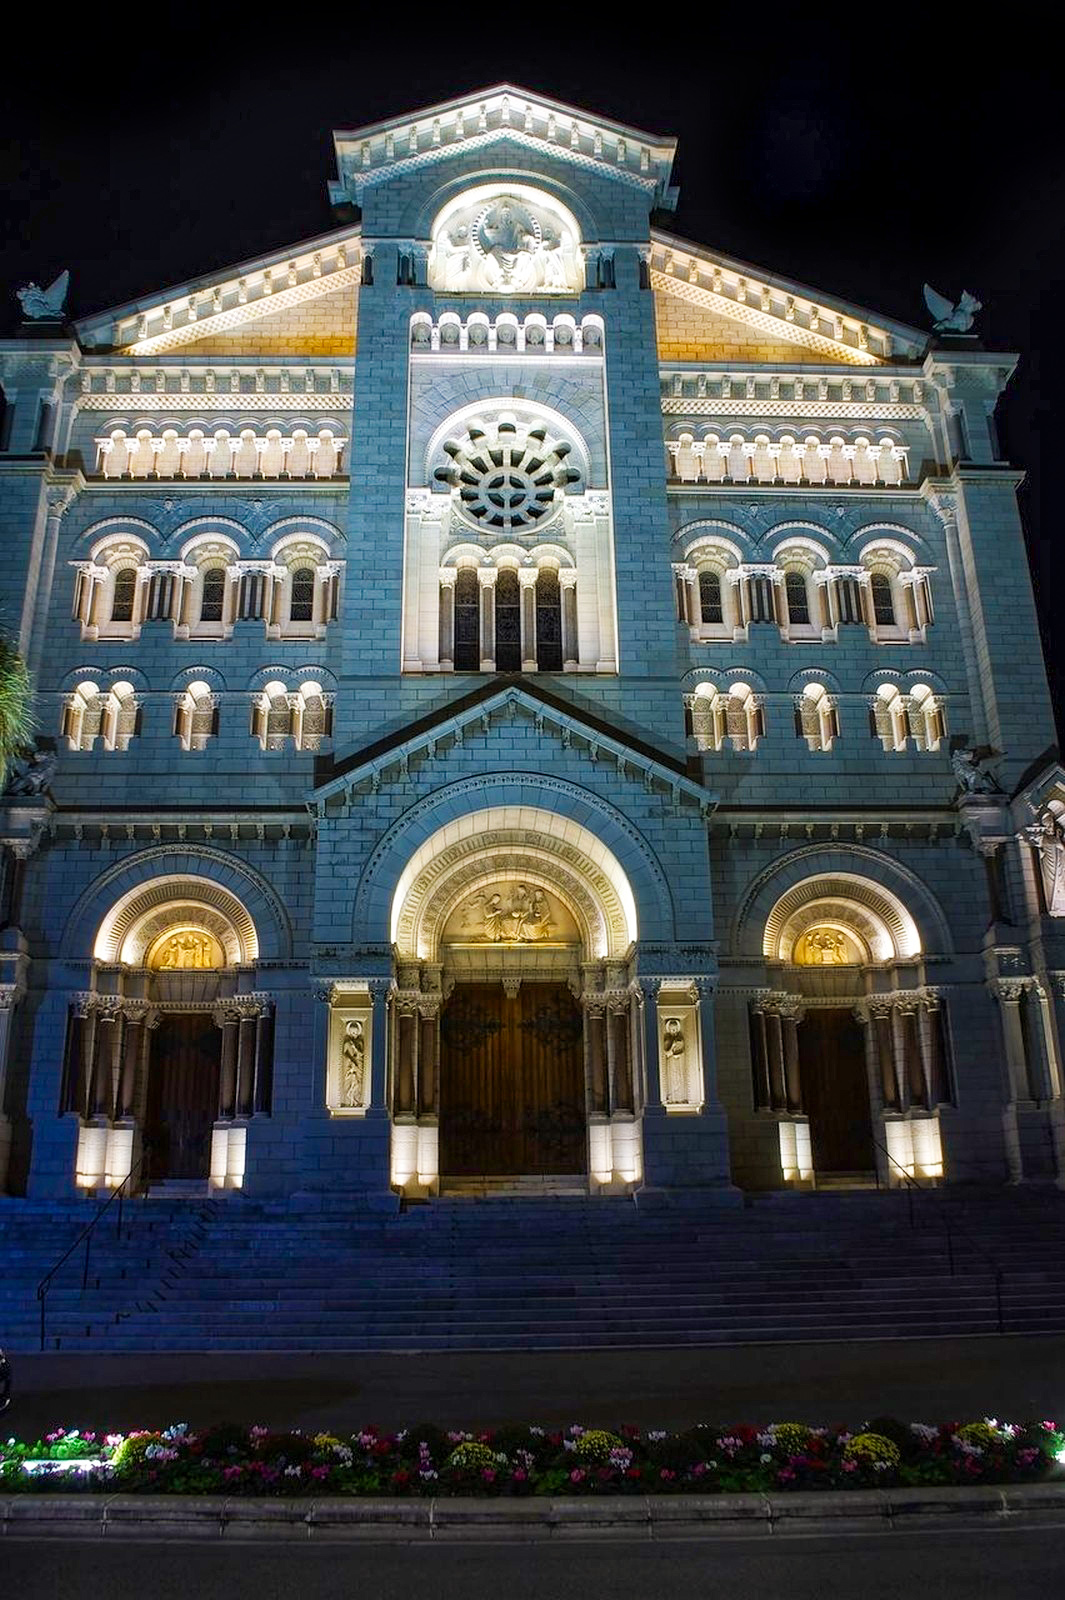 La cathédrale de Monaco de nuit © MSzybalski - licence [CC BY-SA 4.0] de Wikimedia Commons